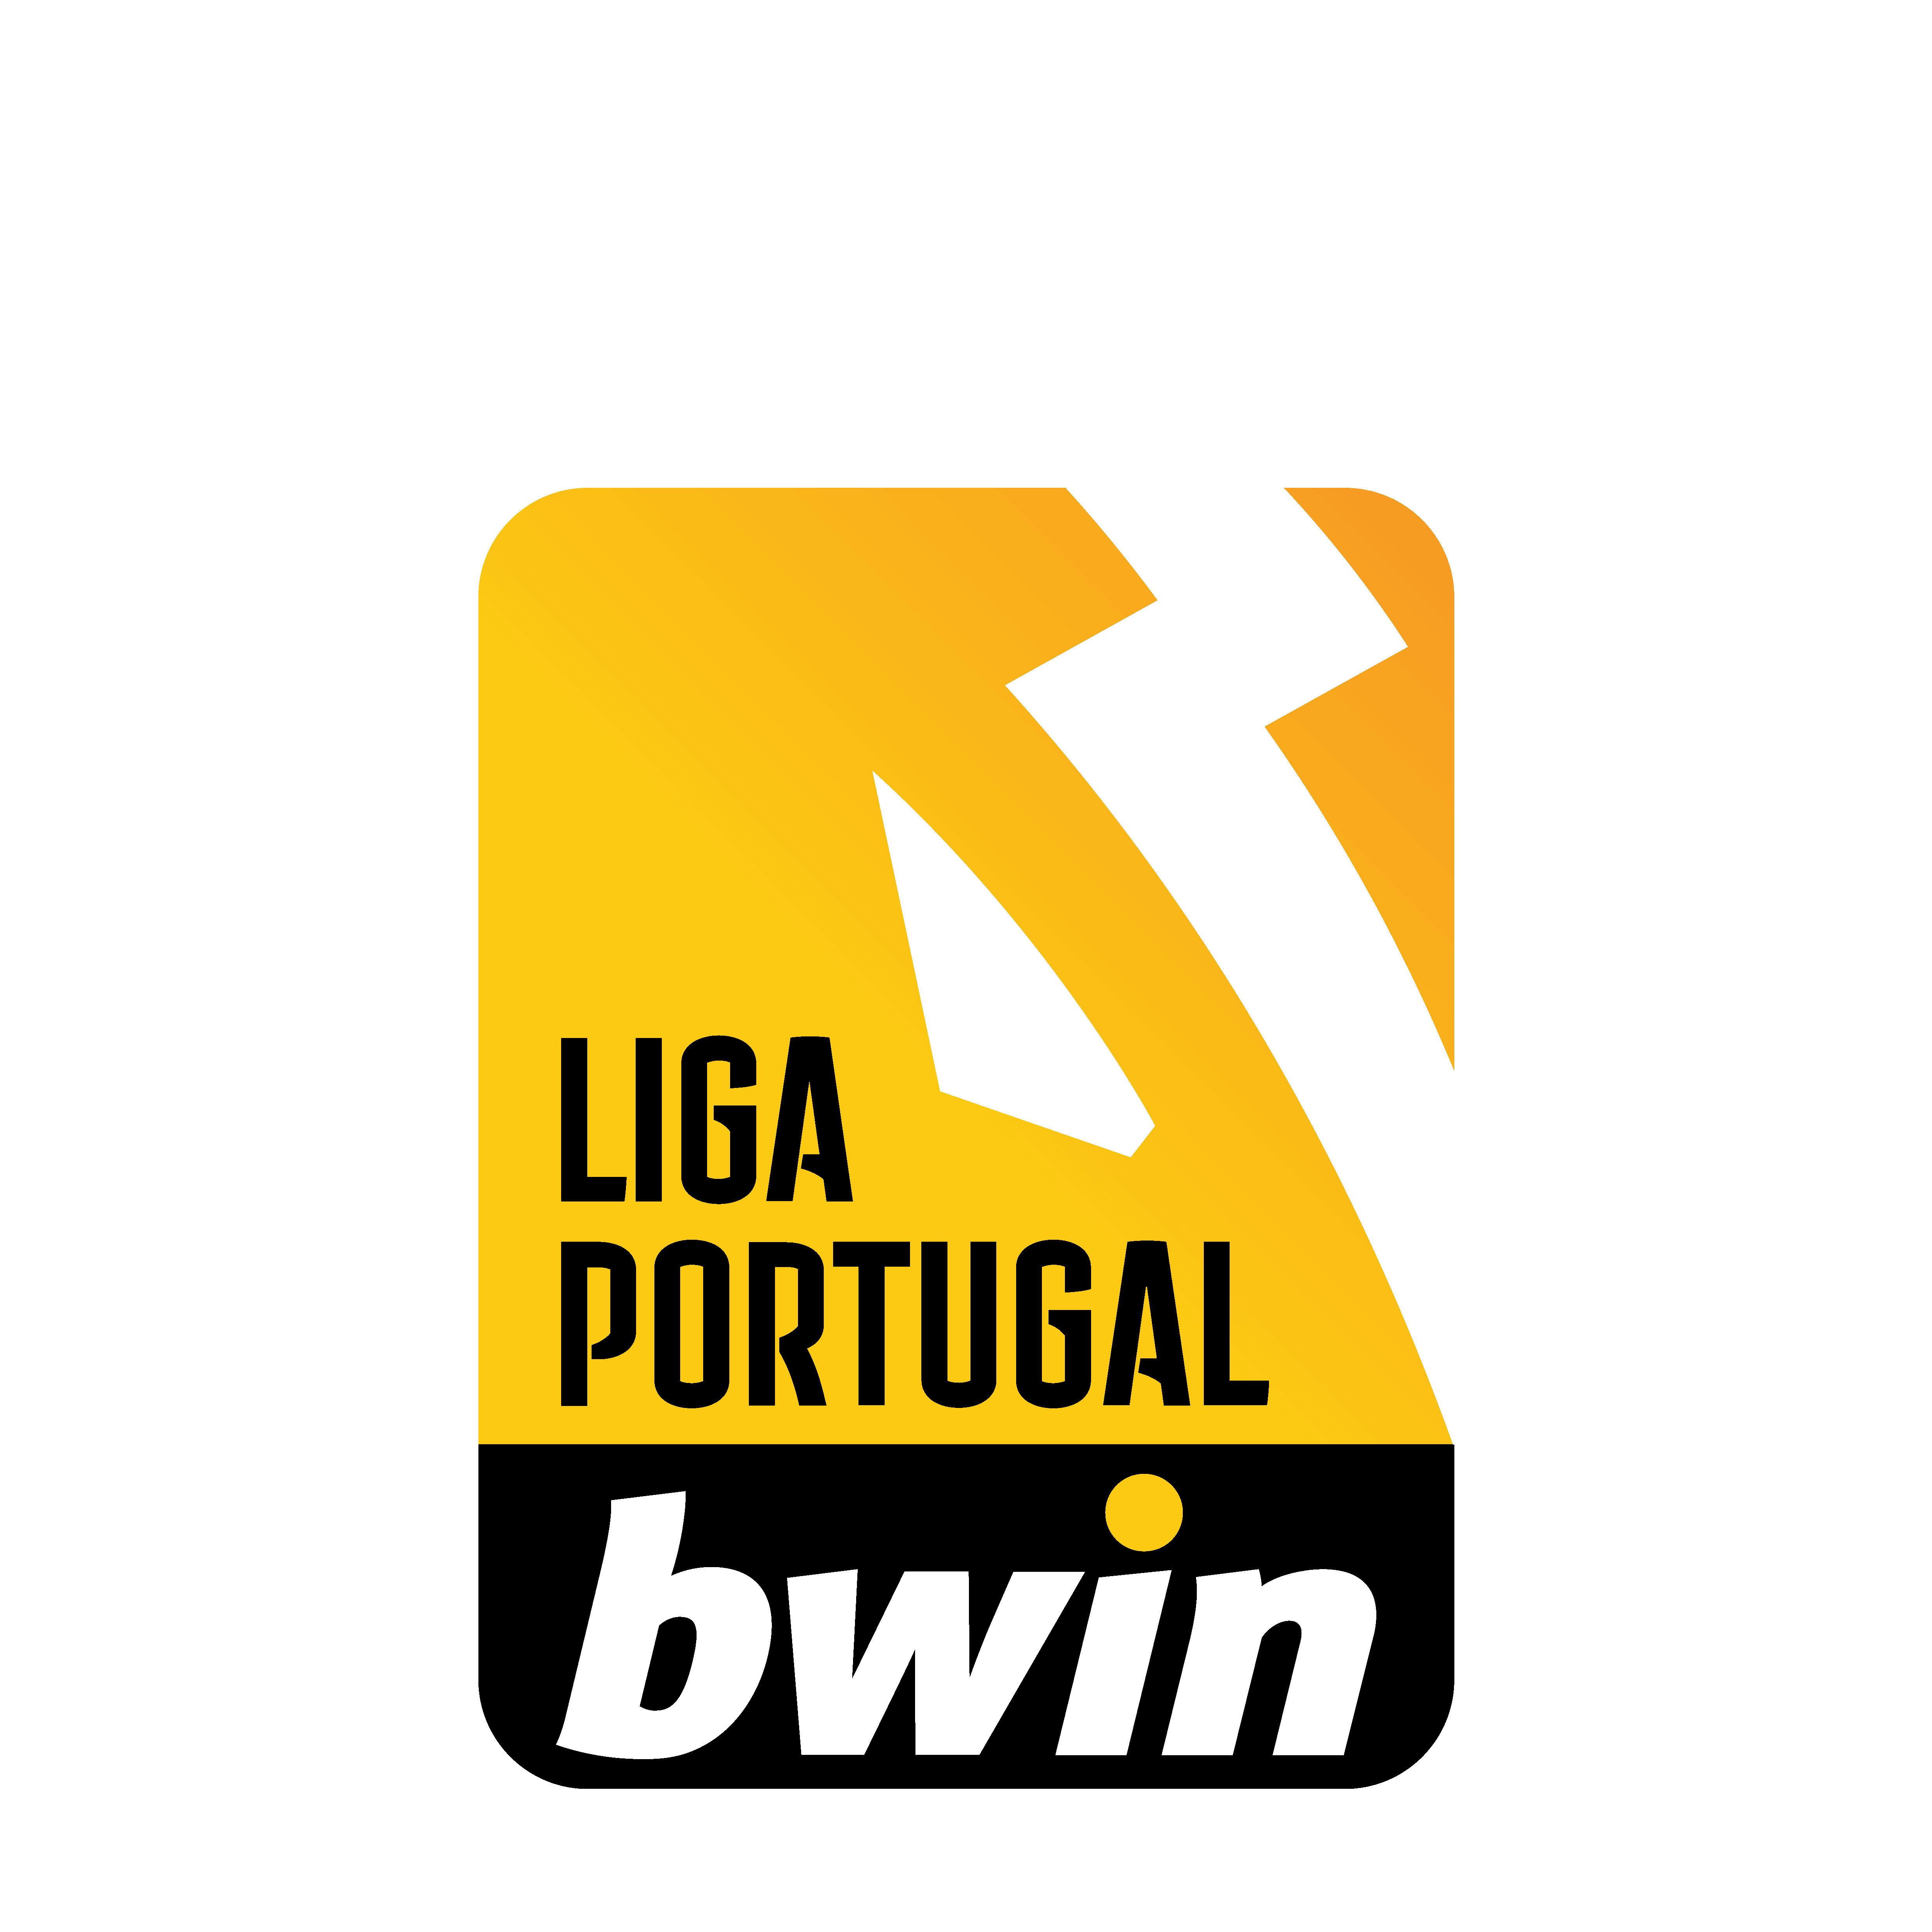 Liga Portugal Bwin Logo Vector.svg (1)